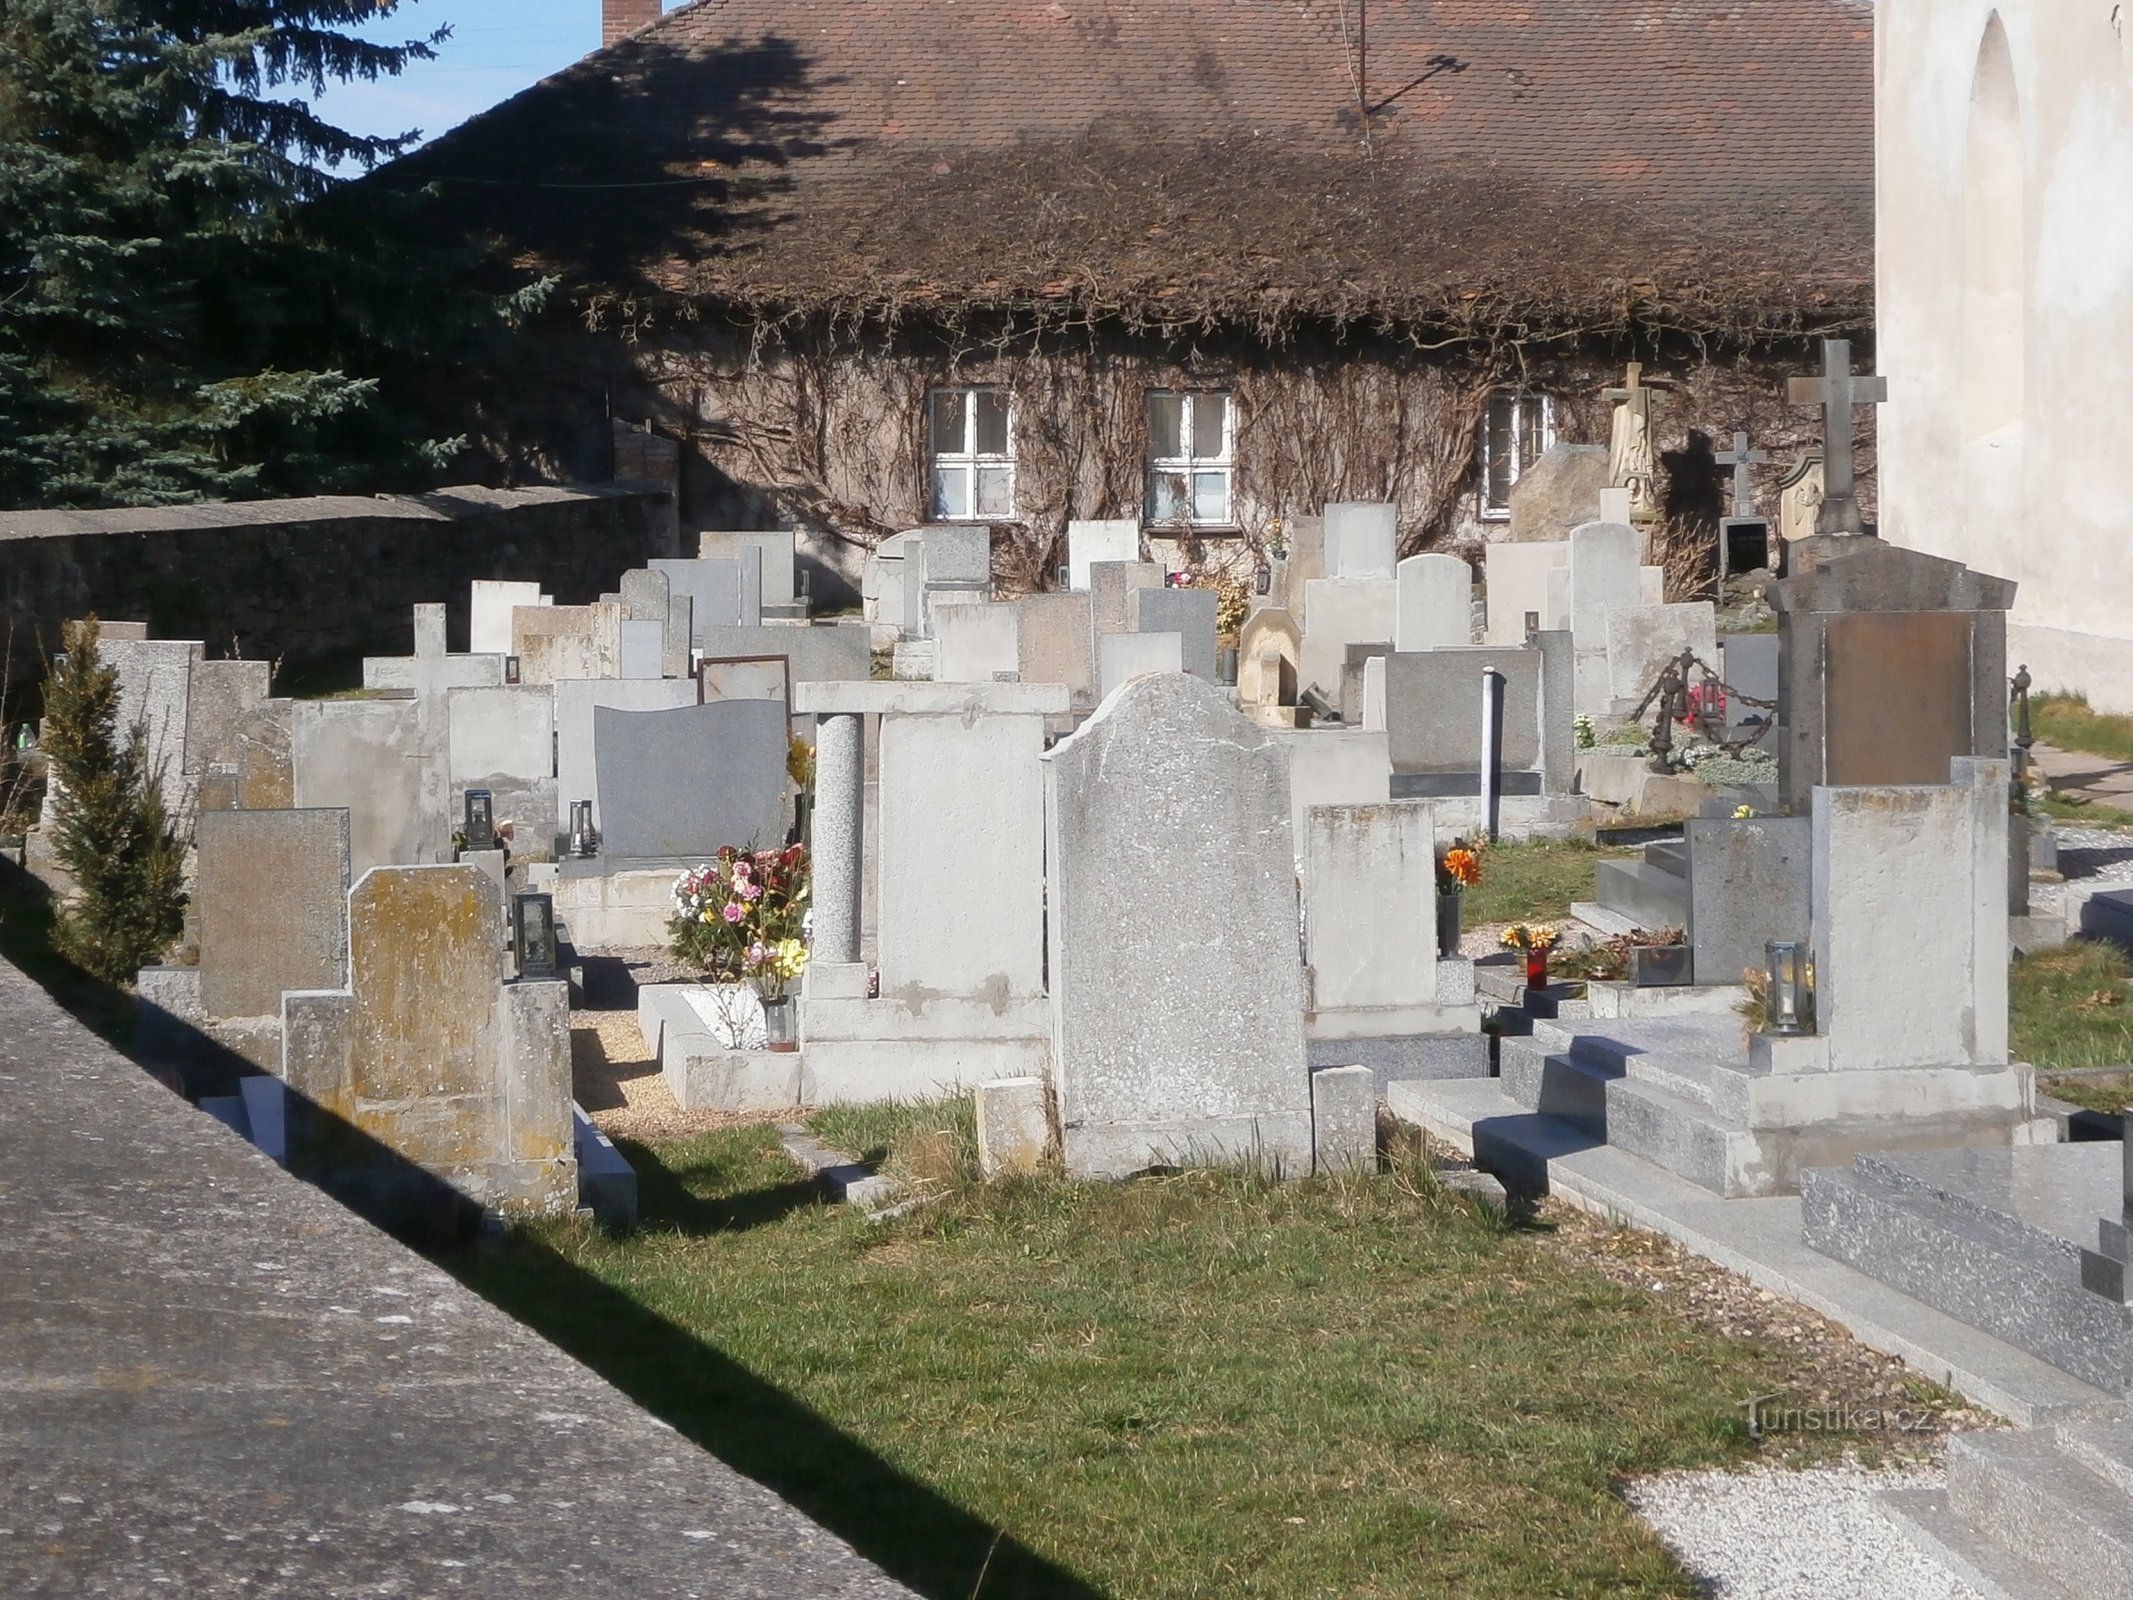 Кладбище (Старе Жданице, 26.3.2017)